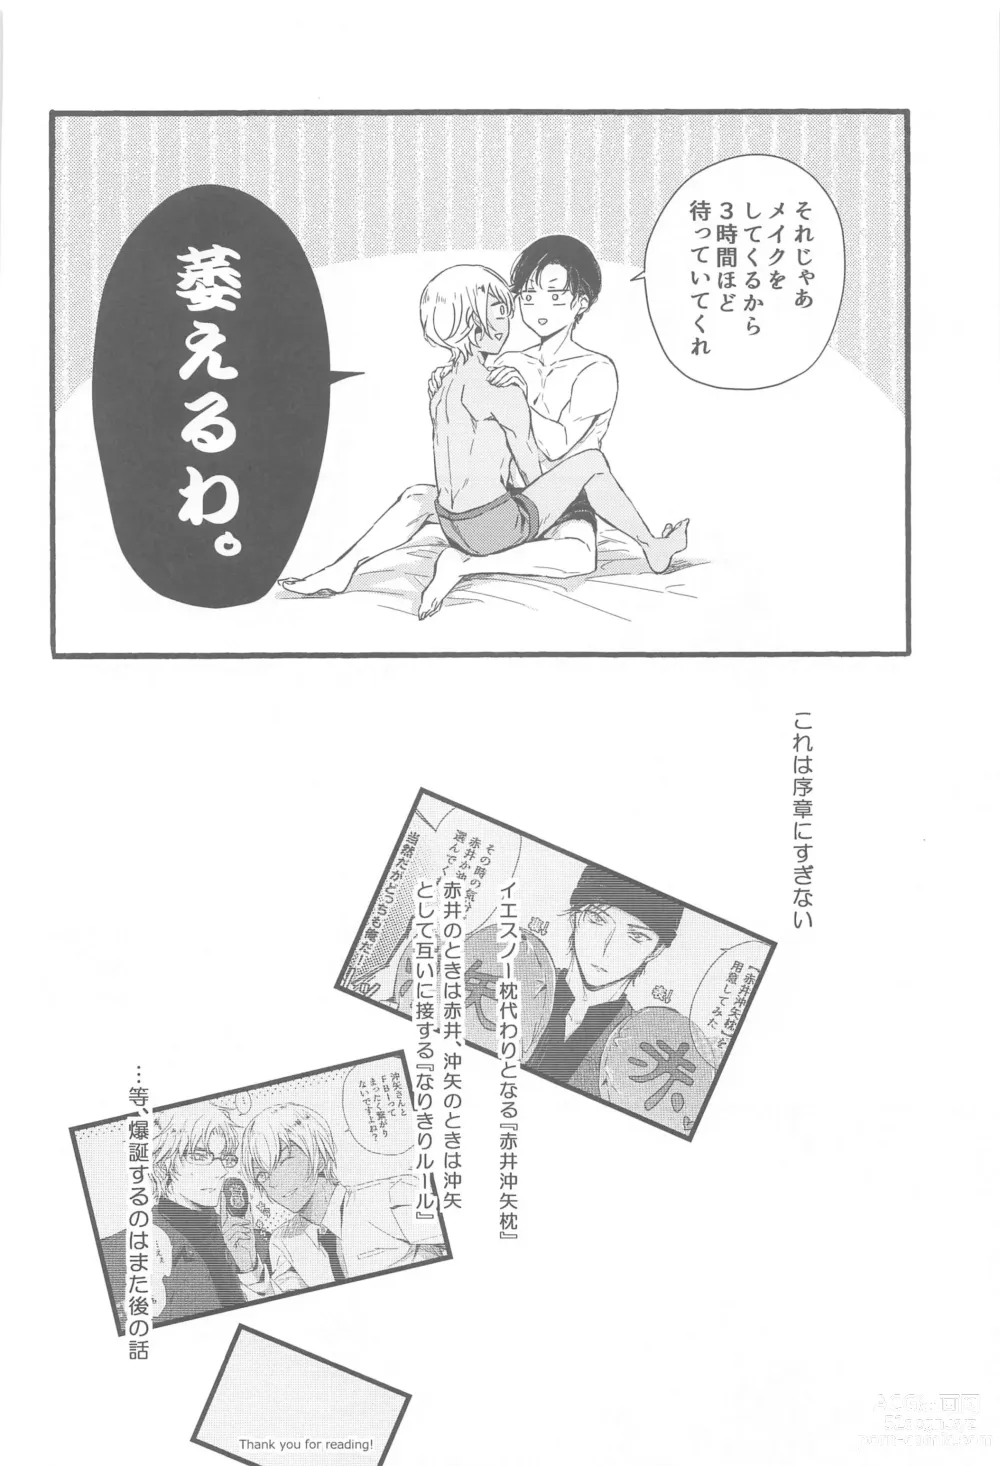 Page 21 of doujinshi Sorekoso Uwaki ni Naranai ka?